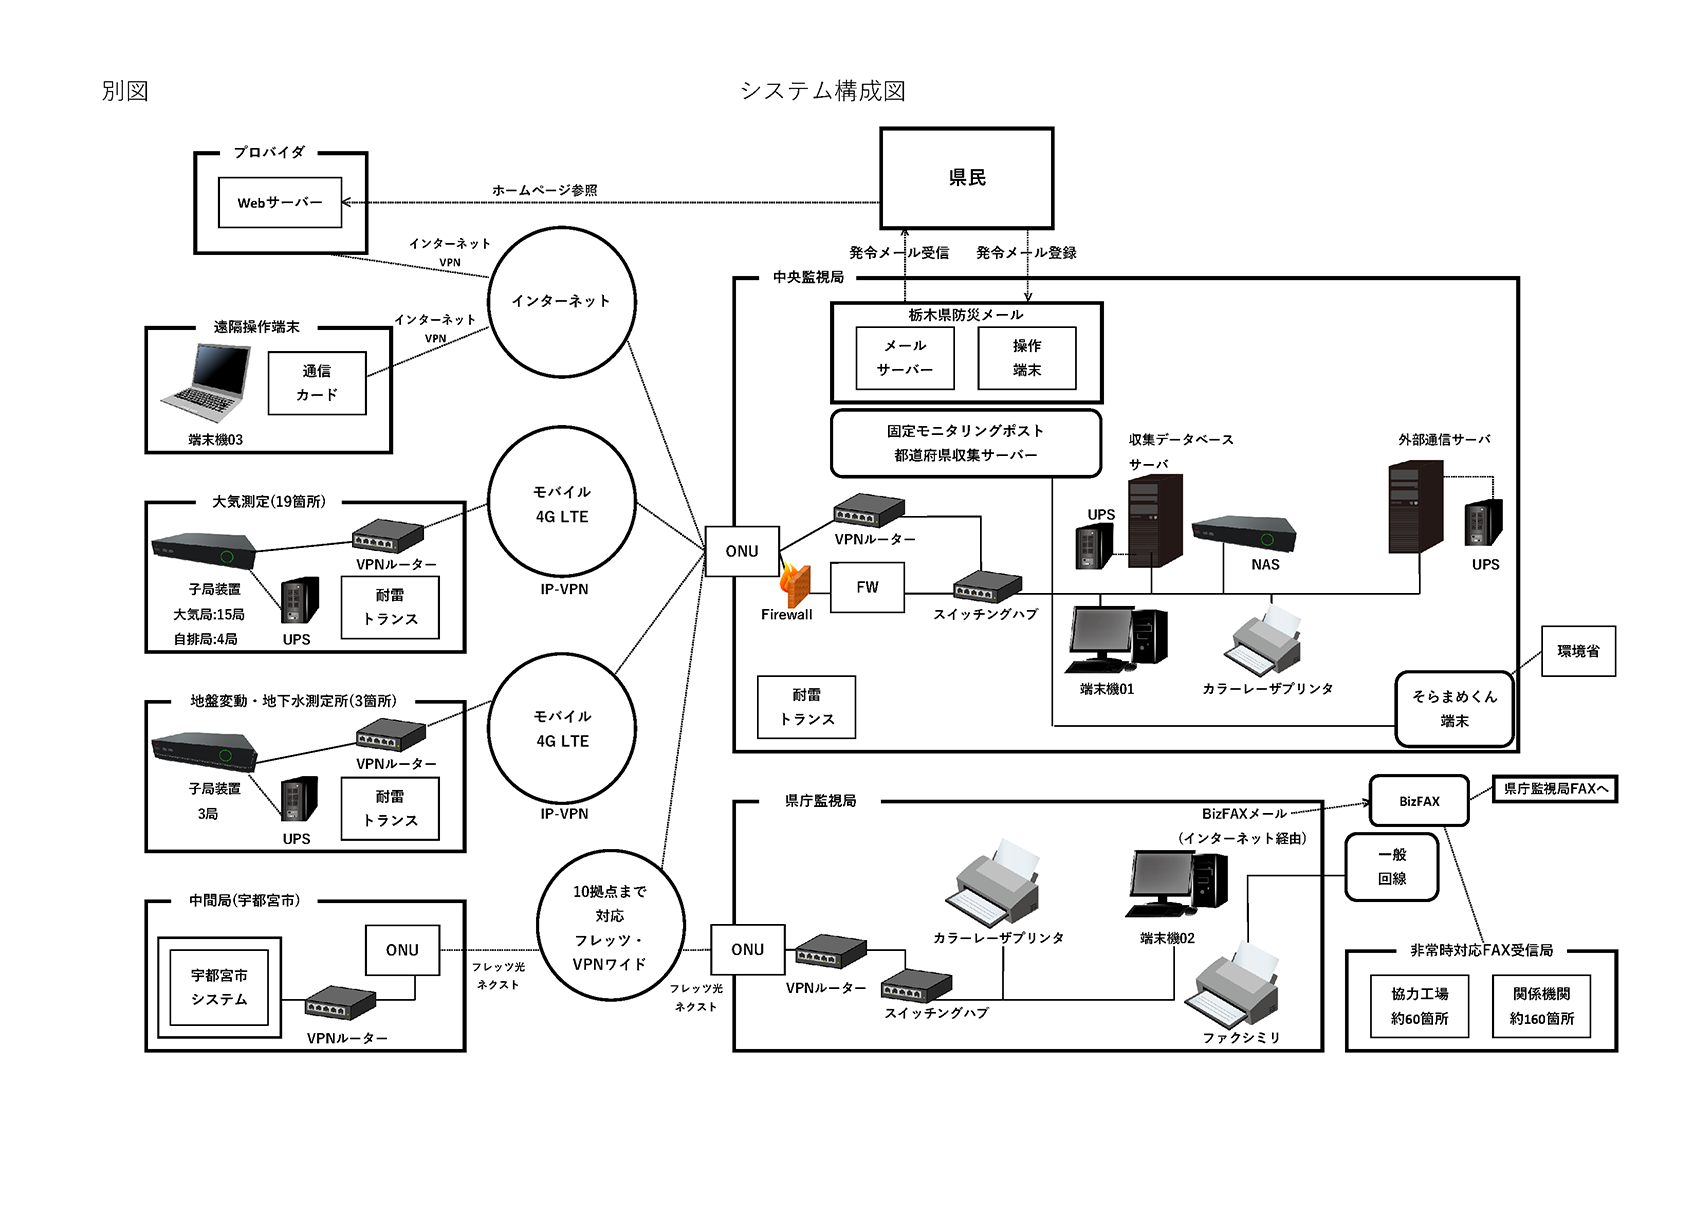 栃木県のシステム構成図